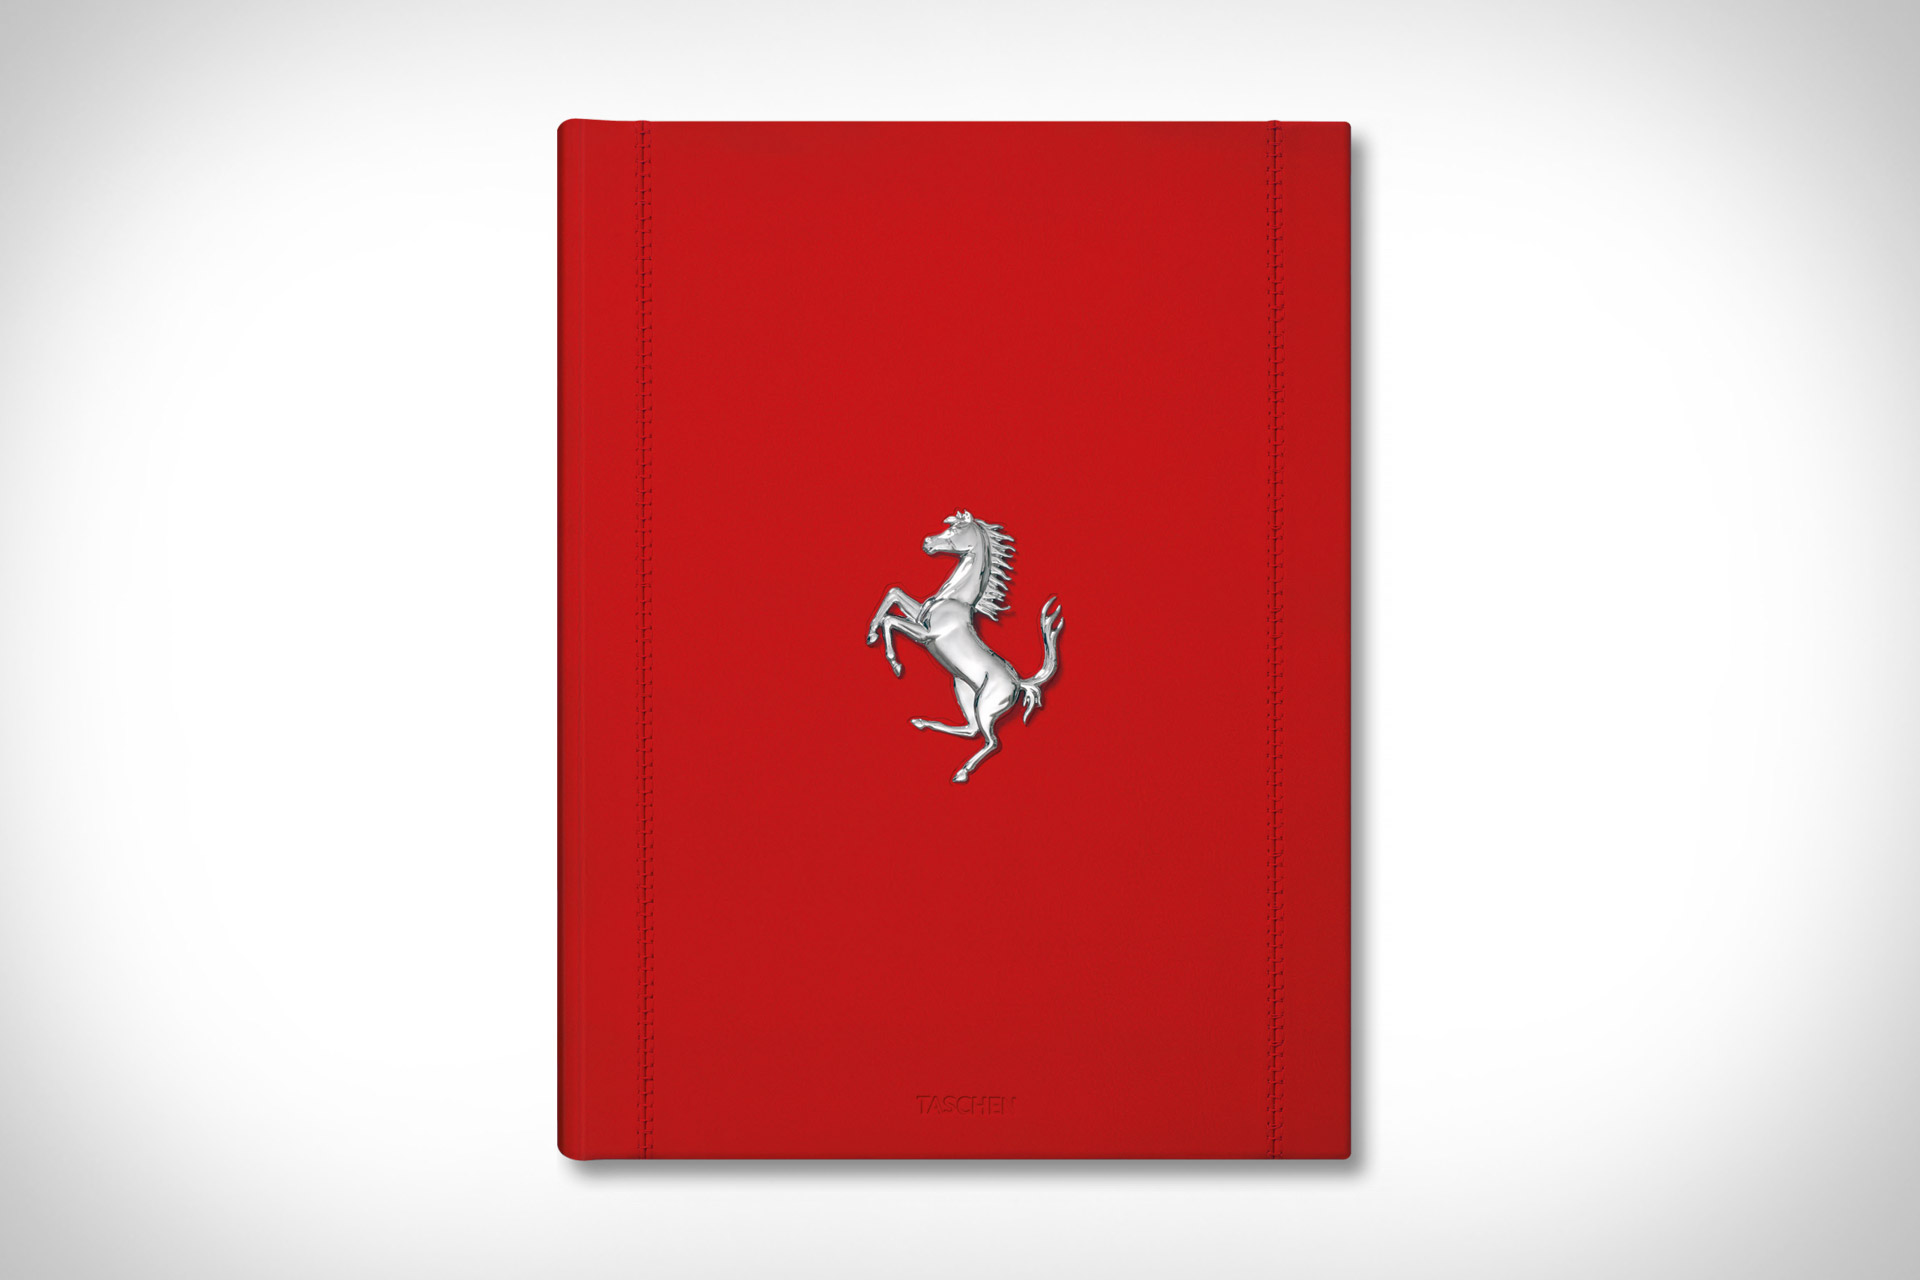 一冊72万円のフェラーリのアーカイブ本『フェラーリ』発売！エキマニを 